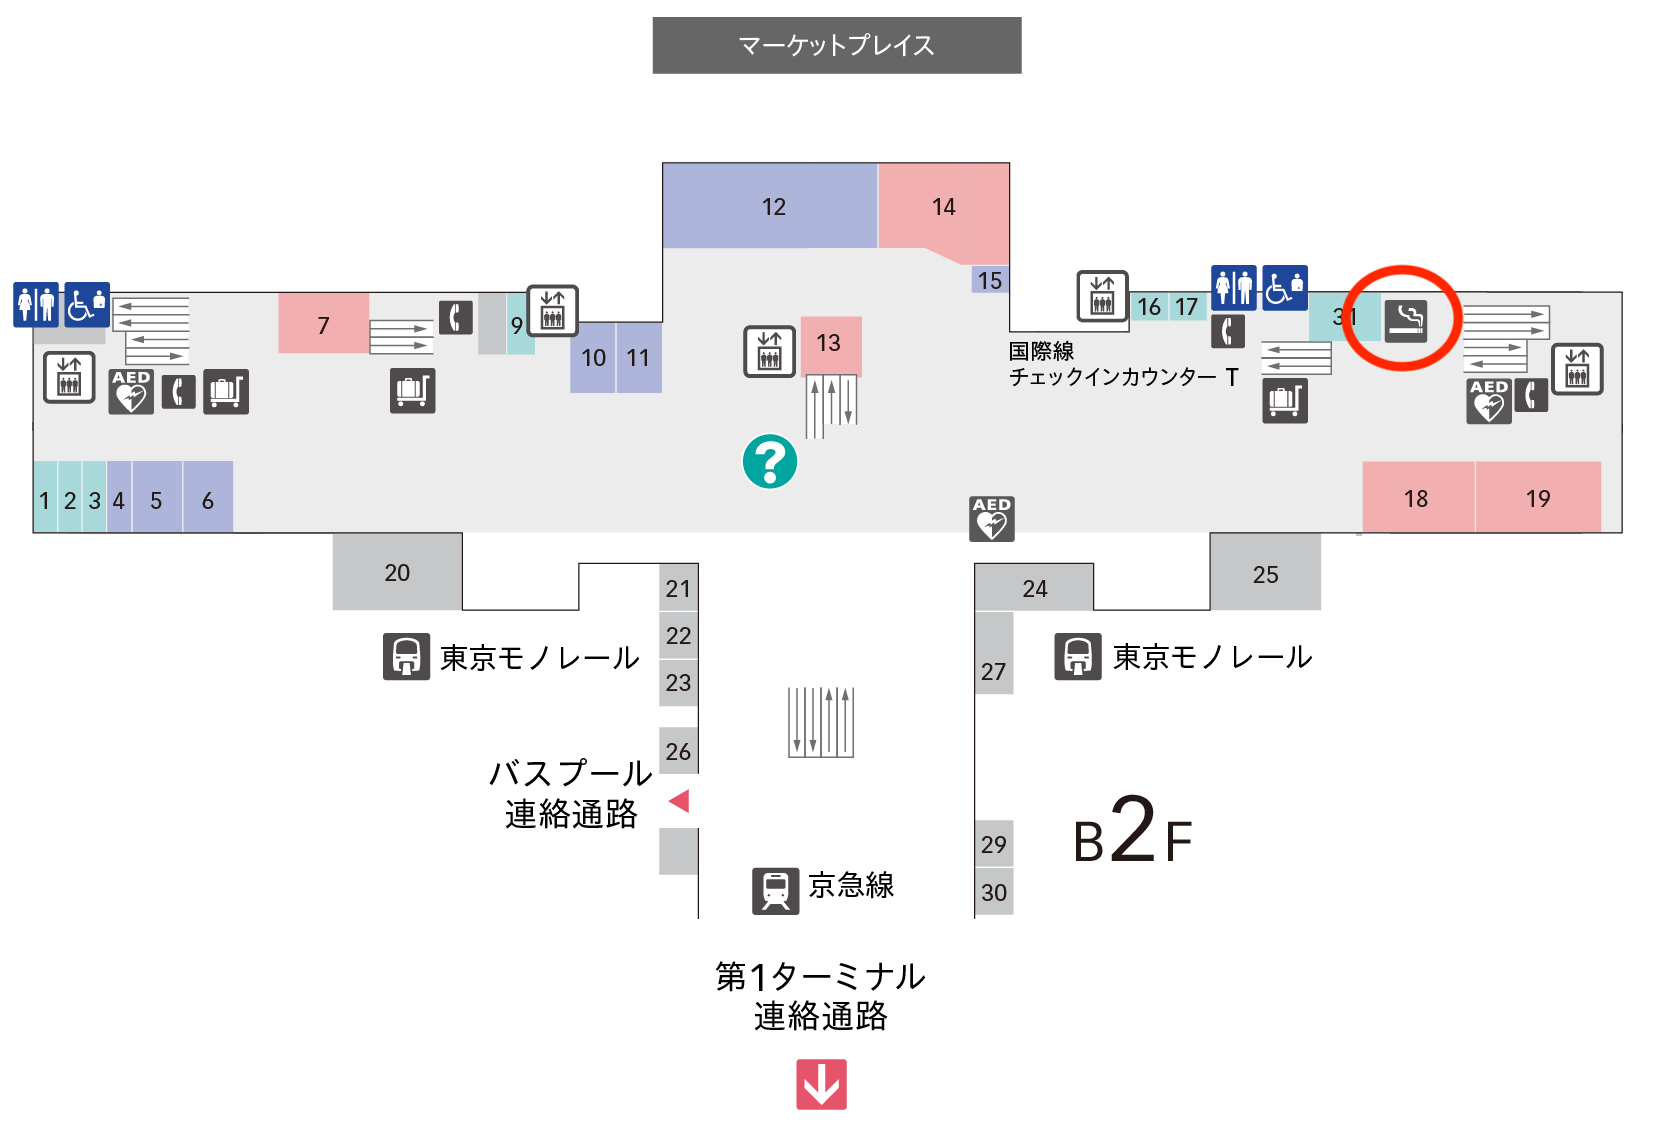 羽田空港第2ターミナル喫煙所地下1F